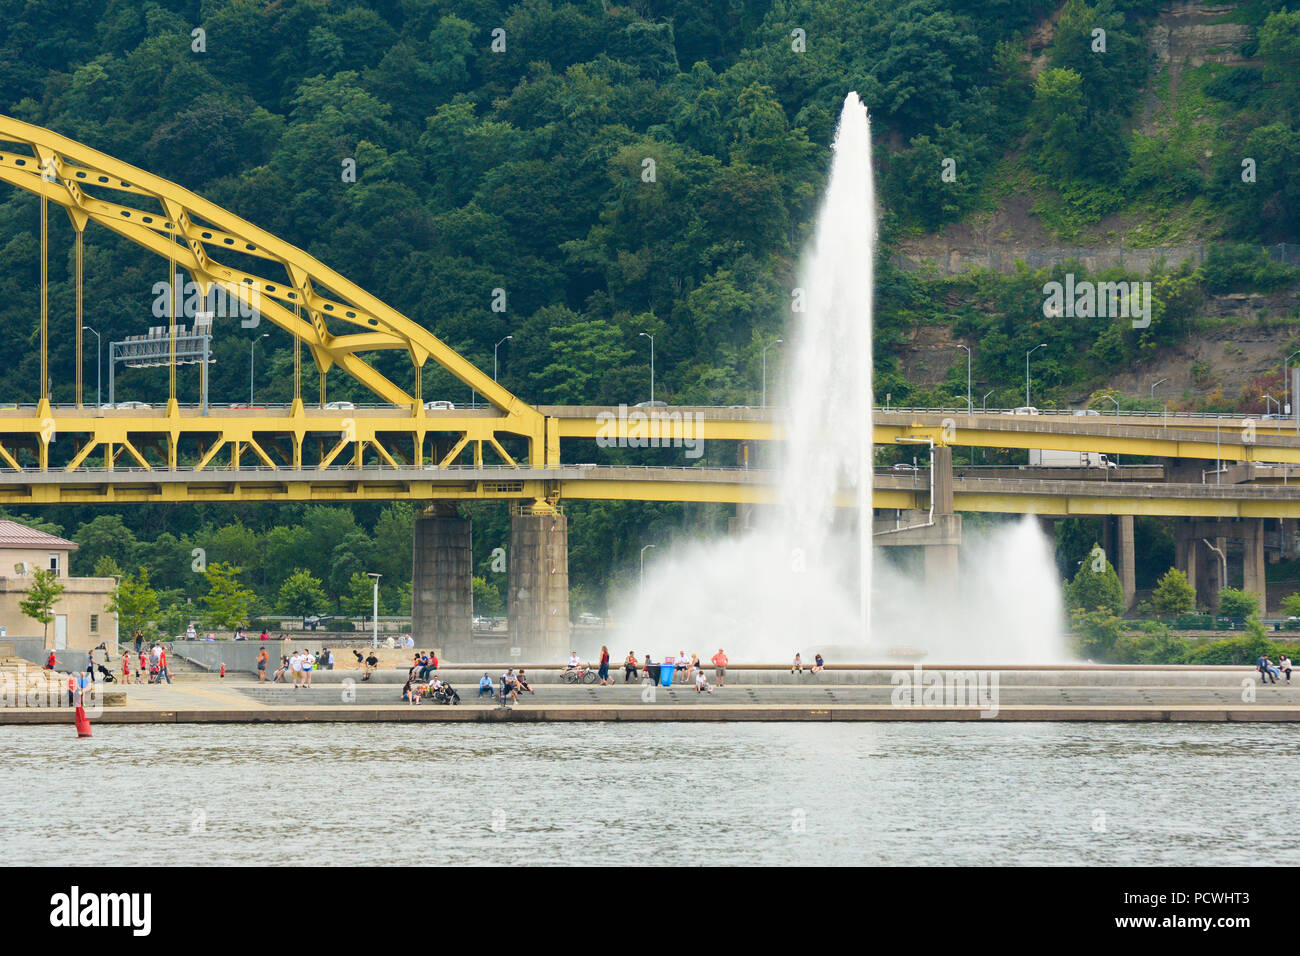 Der Brunnen am Point State Park, Pittsburgh, Pennsylvania, liegt am Zusammenfluss von Allegheny, der Monongahela und dem Ohio Fluss. Stockfoto